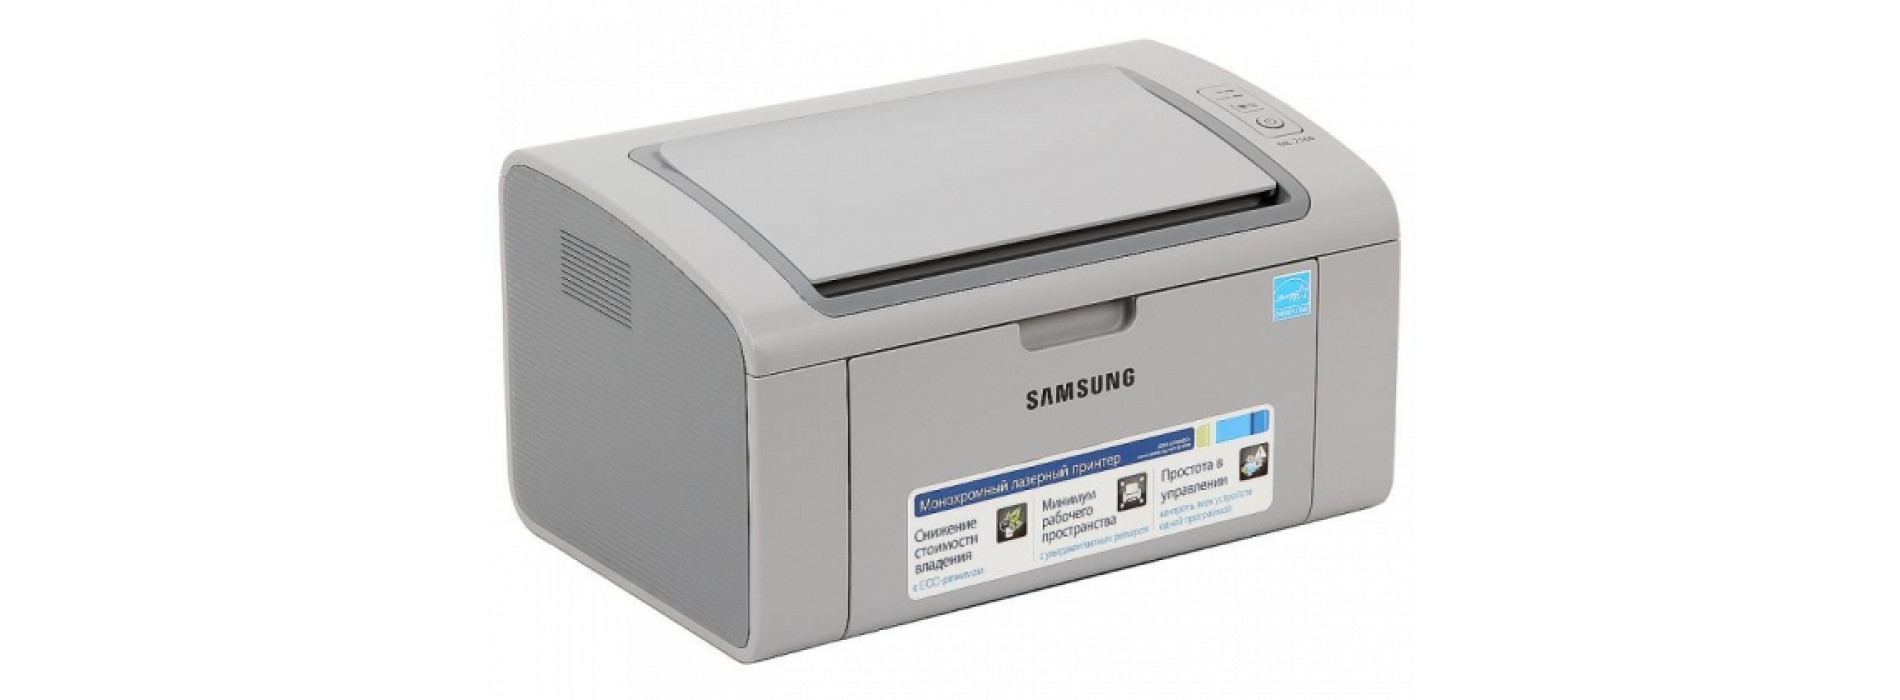 Перепрошивание модели Samsung ML-2160 - Заправка в СПБ